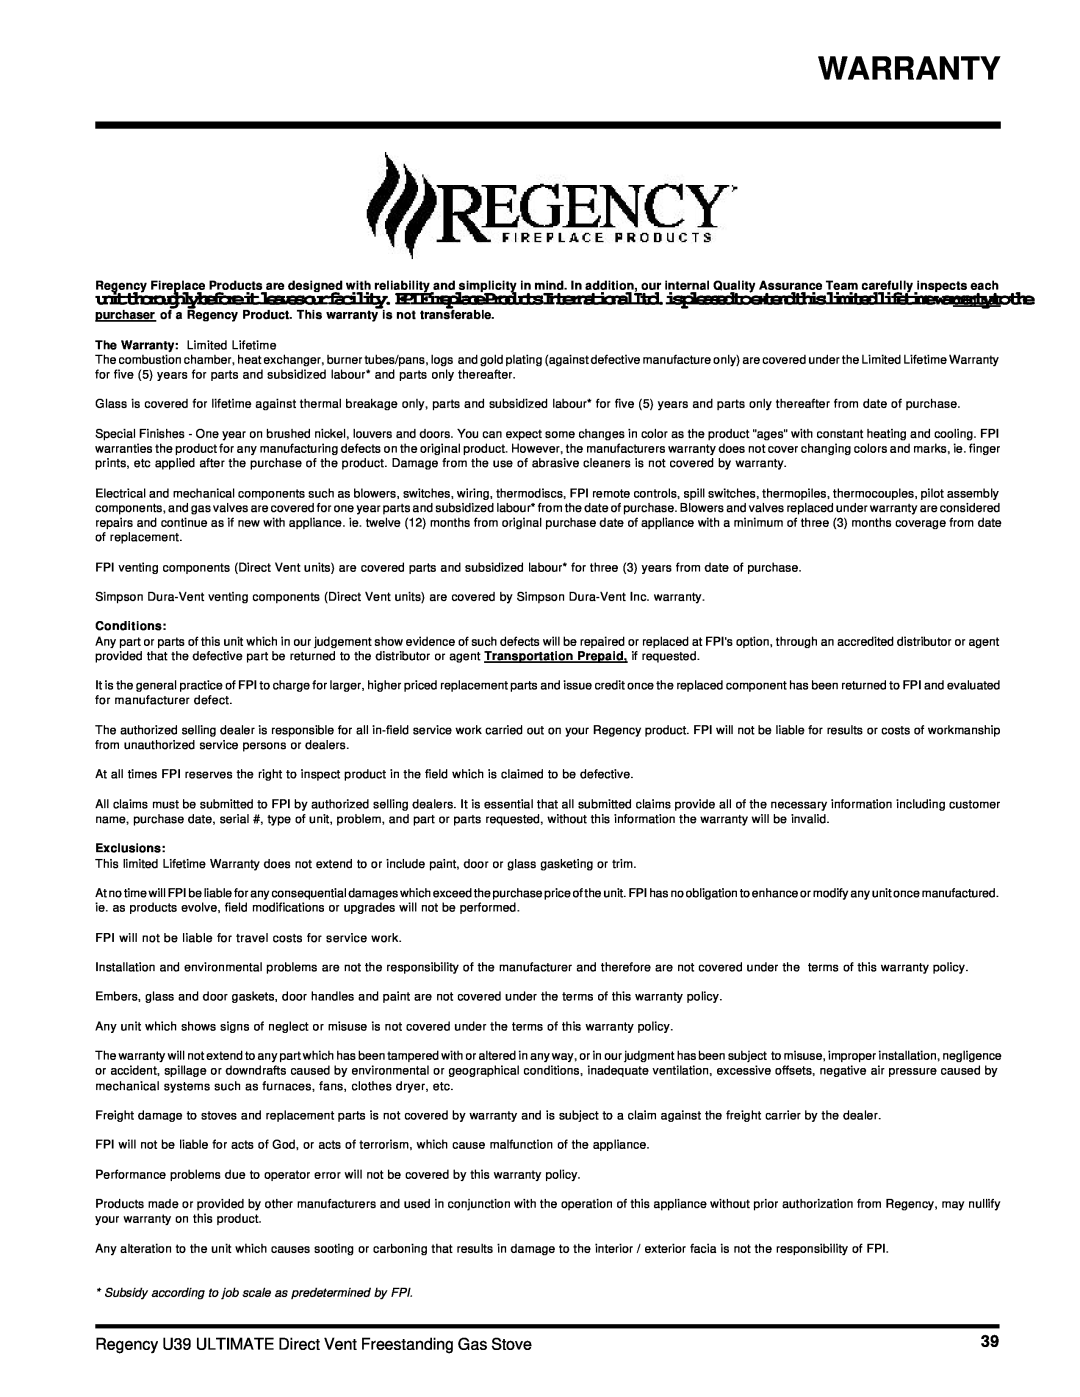 Regency U39-NG, U39-LP installation manual Warranty, Conditions, Exclusions 